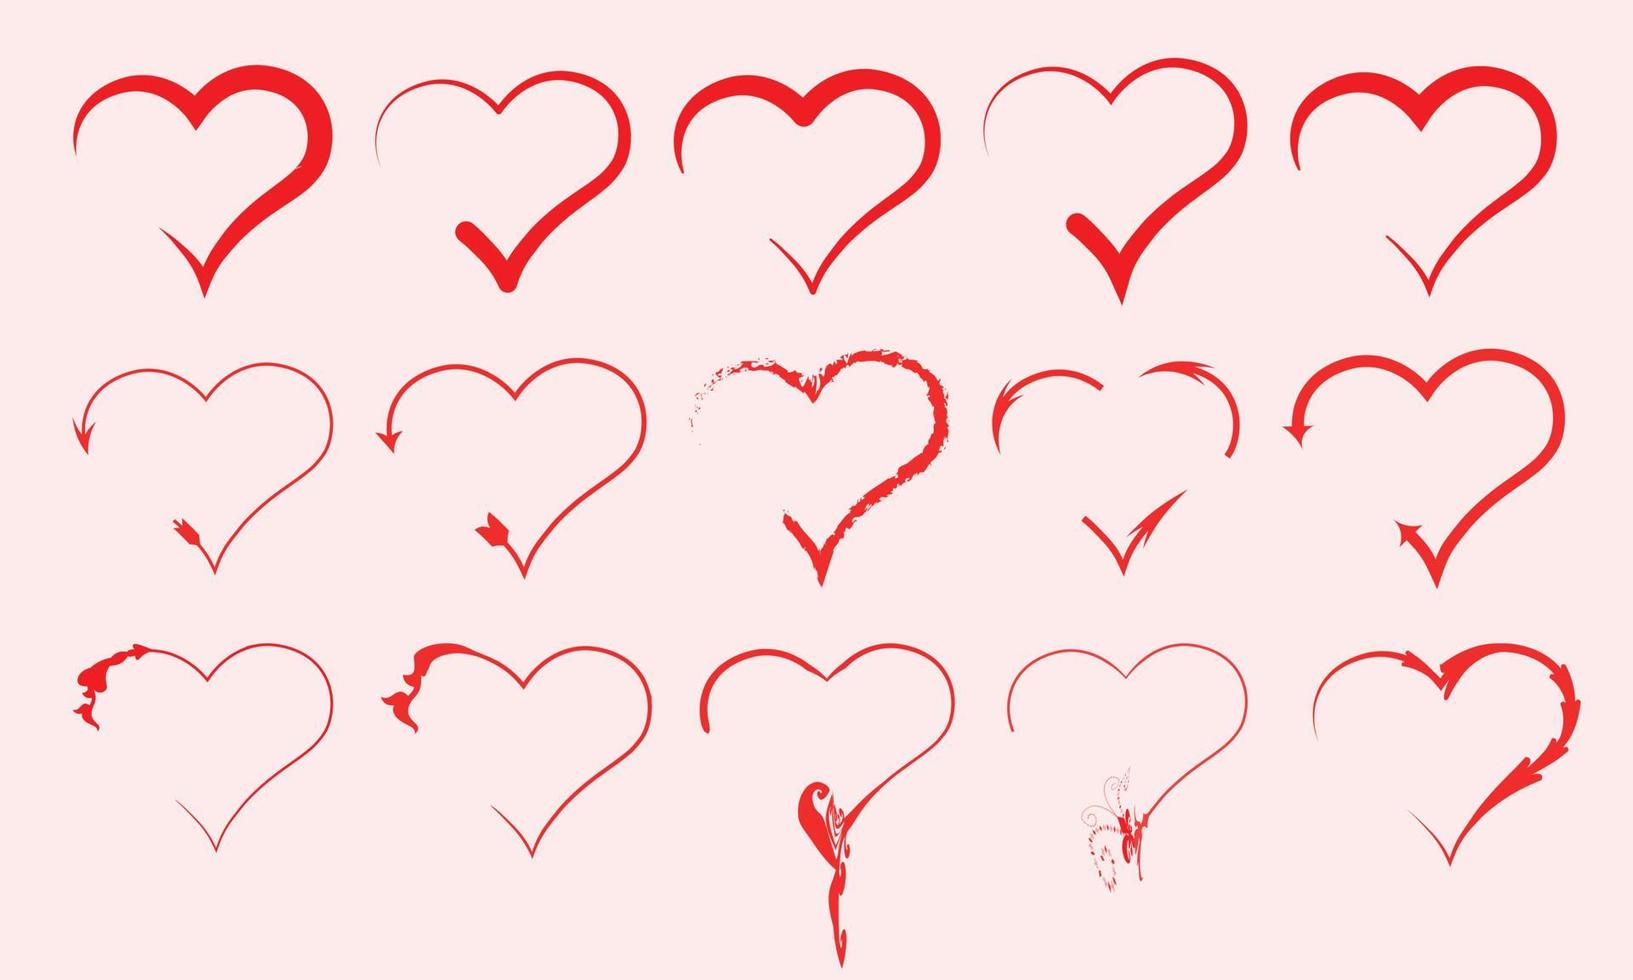 Valentinstag rot und rosa ClipArt Design Sammlung Teil drei vektor